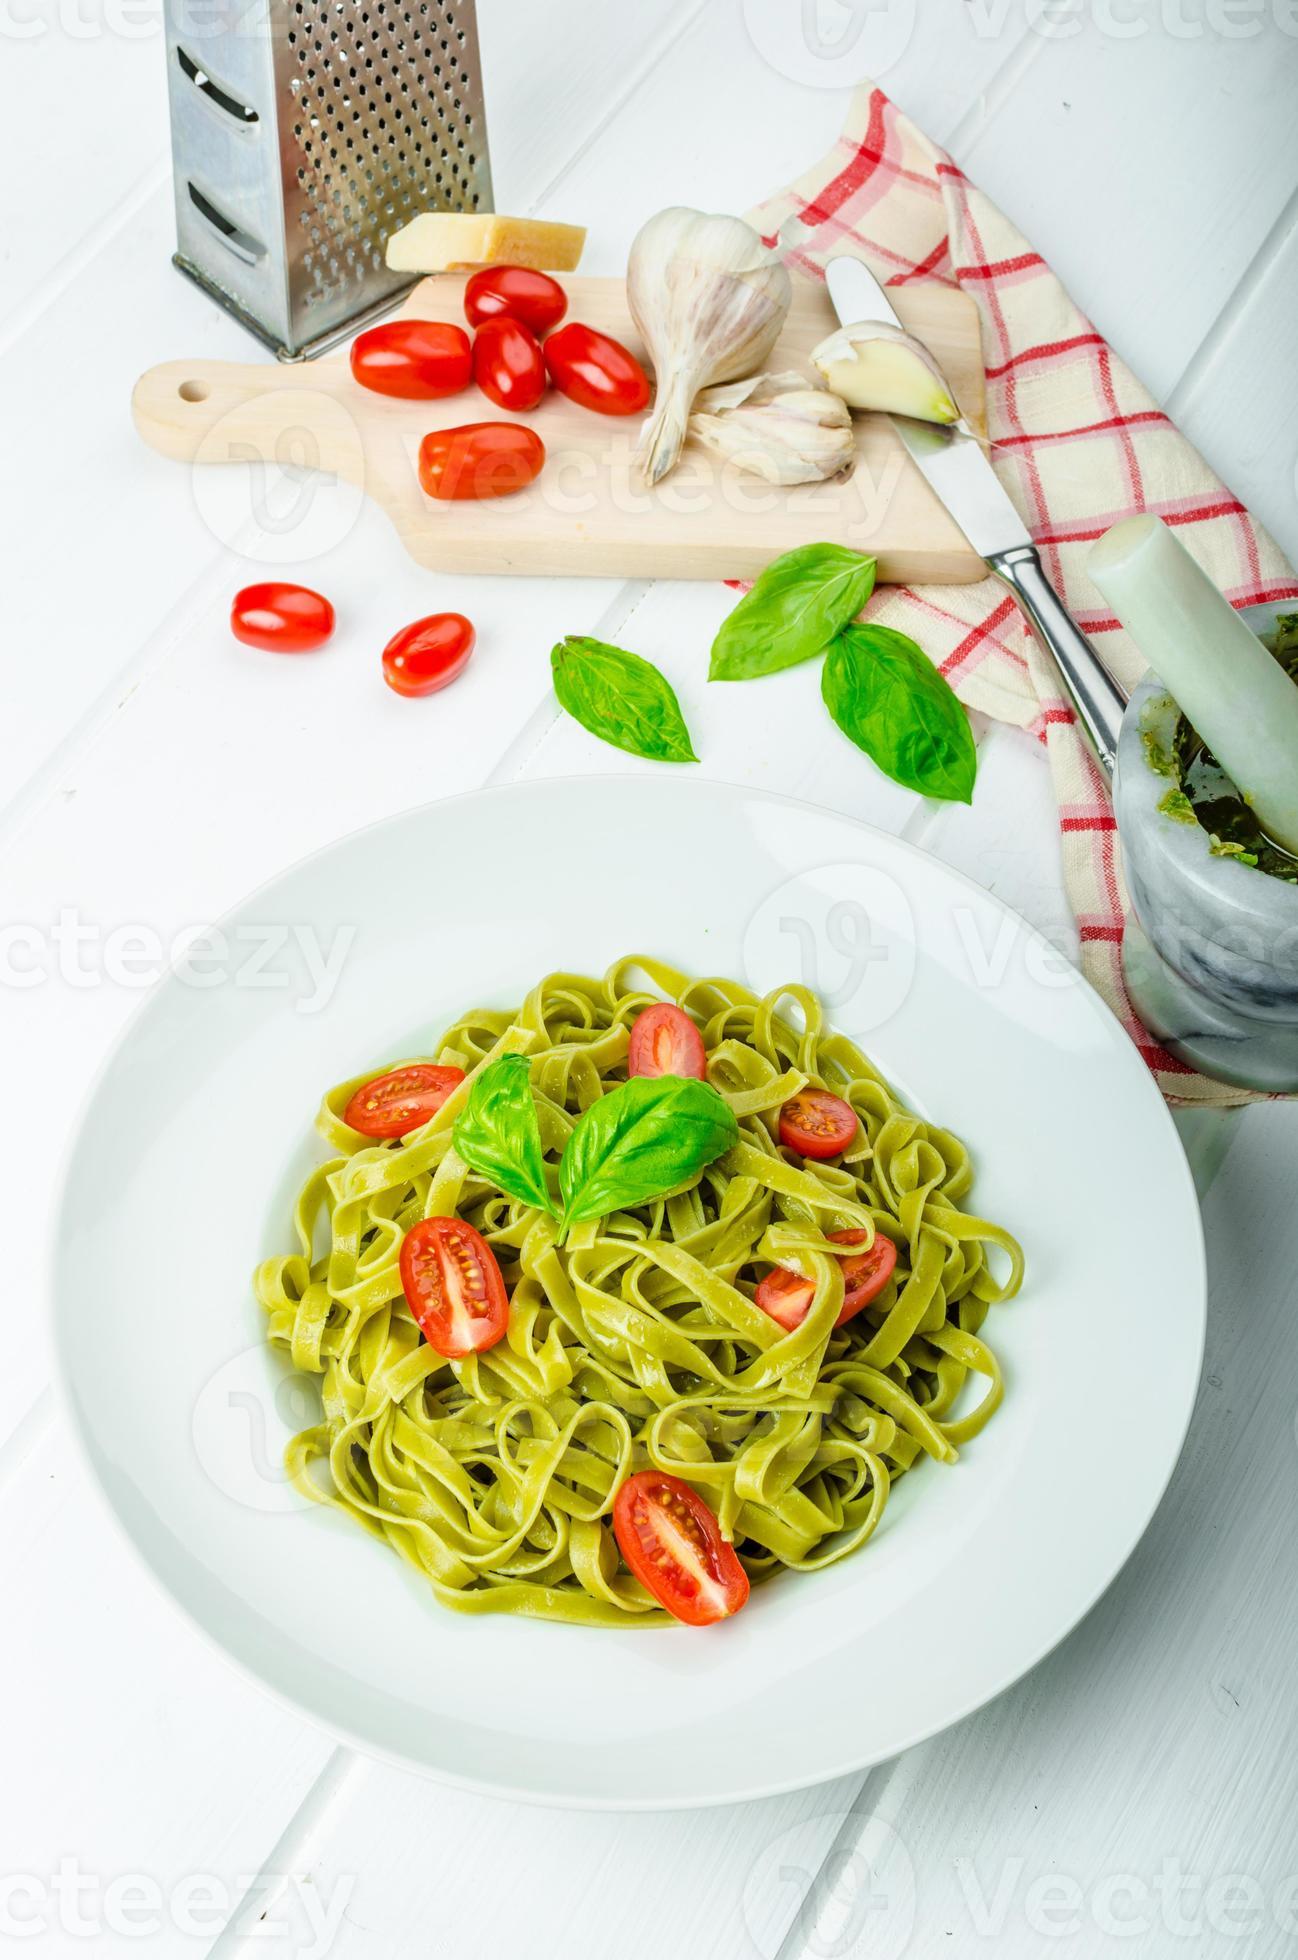 Spinat Tagliatelle mit Basilikum Pesto und Mini-Tomaten foto